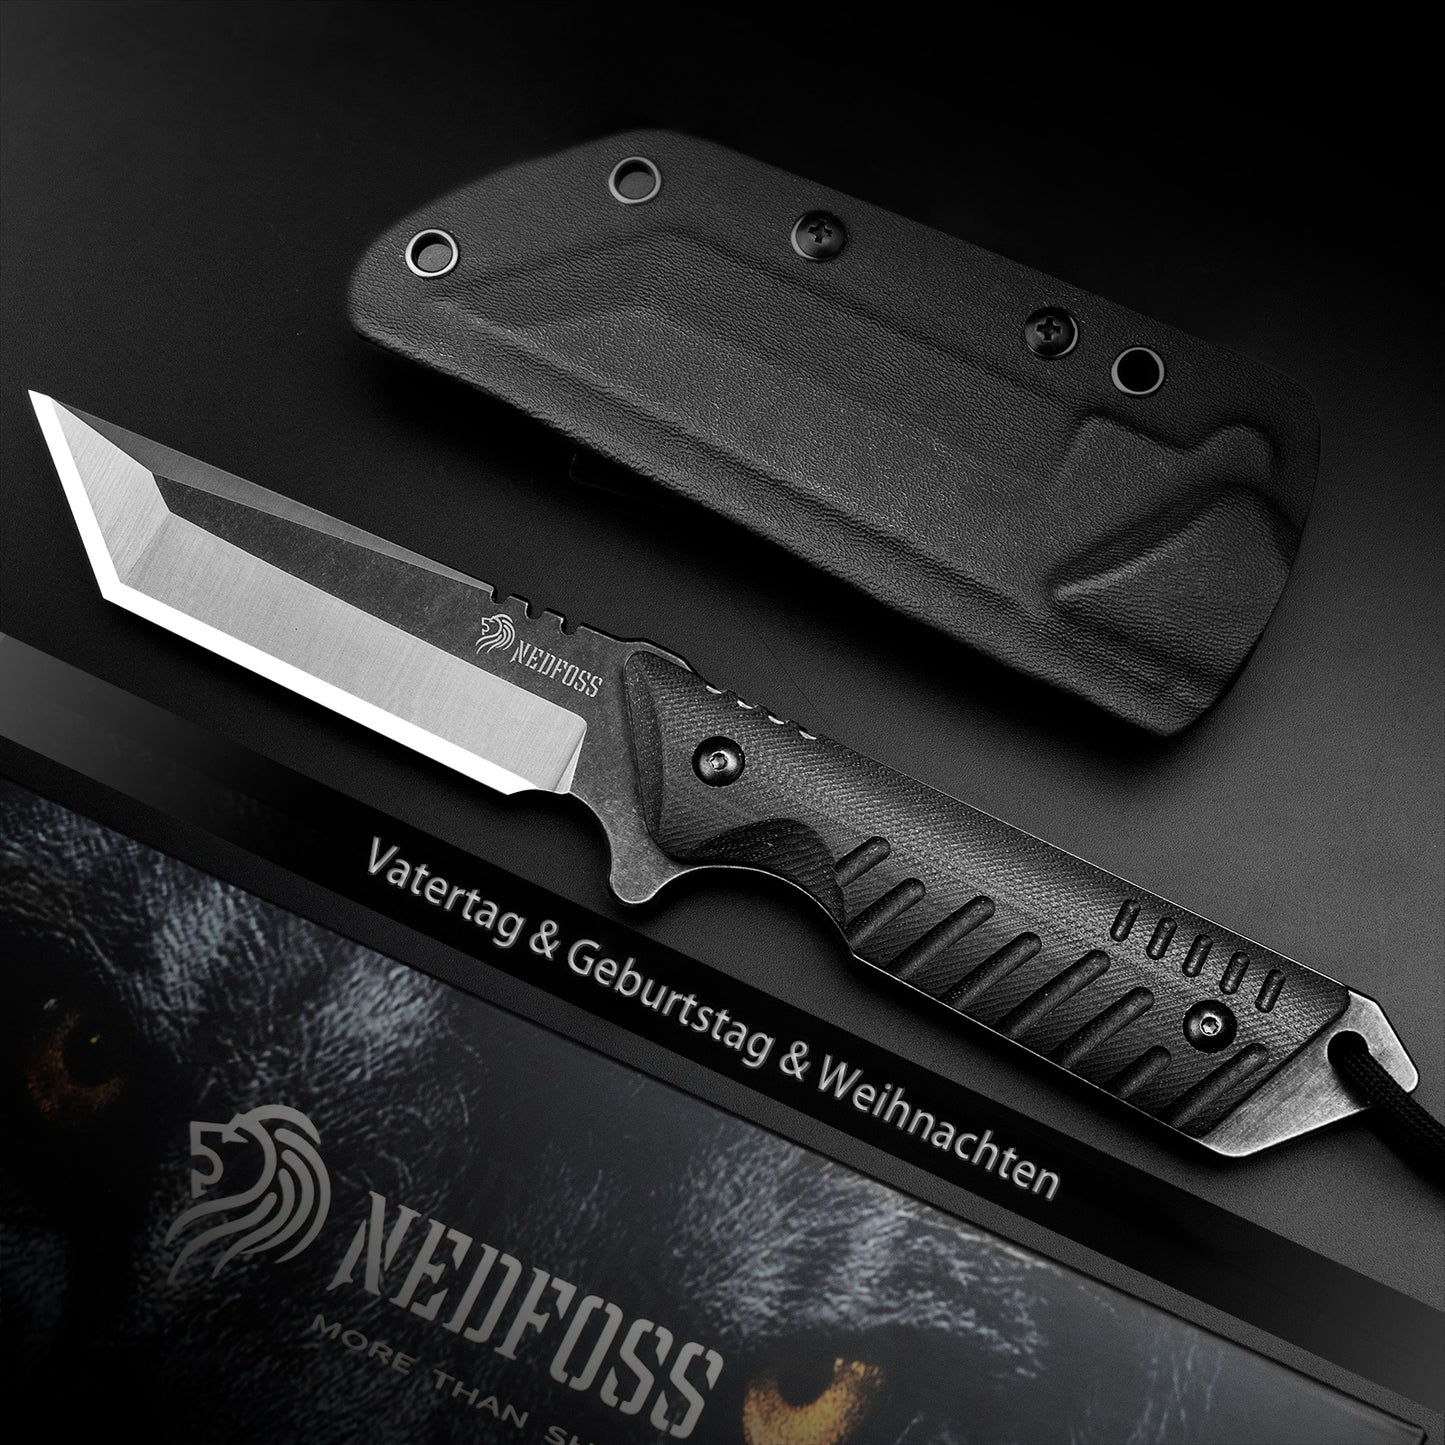 NEDFOSS DRAGON Tanto Outdoor Messer mit Kydex Holster, 10,4cm Full Tang EDC Survival Messer mit G10 Griff, feststehende Messer, Camping Gürtelmesser, Bushcraft Messer